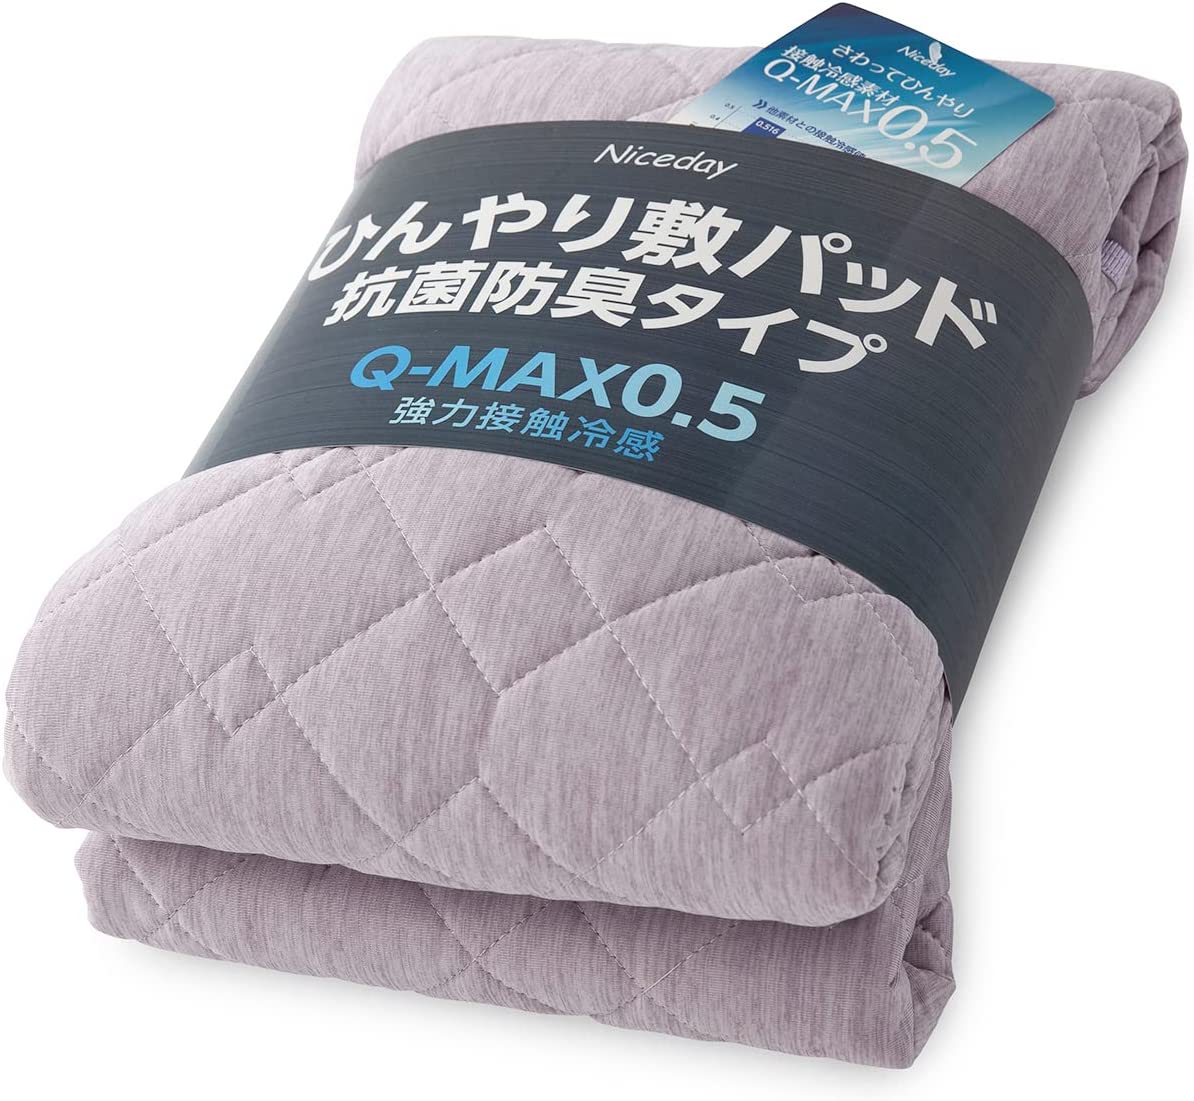 【日本代購】Niceday 涼爽 床墊 觸感清涼 Q-max0.542 可洗 褥墊 抗菌 防臭 雙面可用 粉色